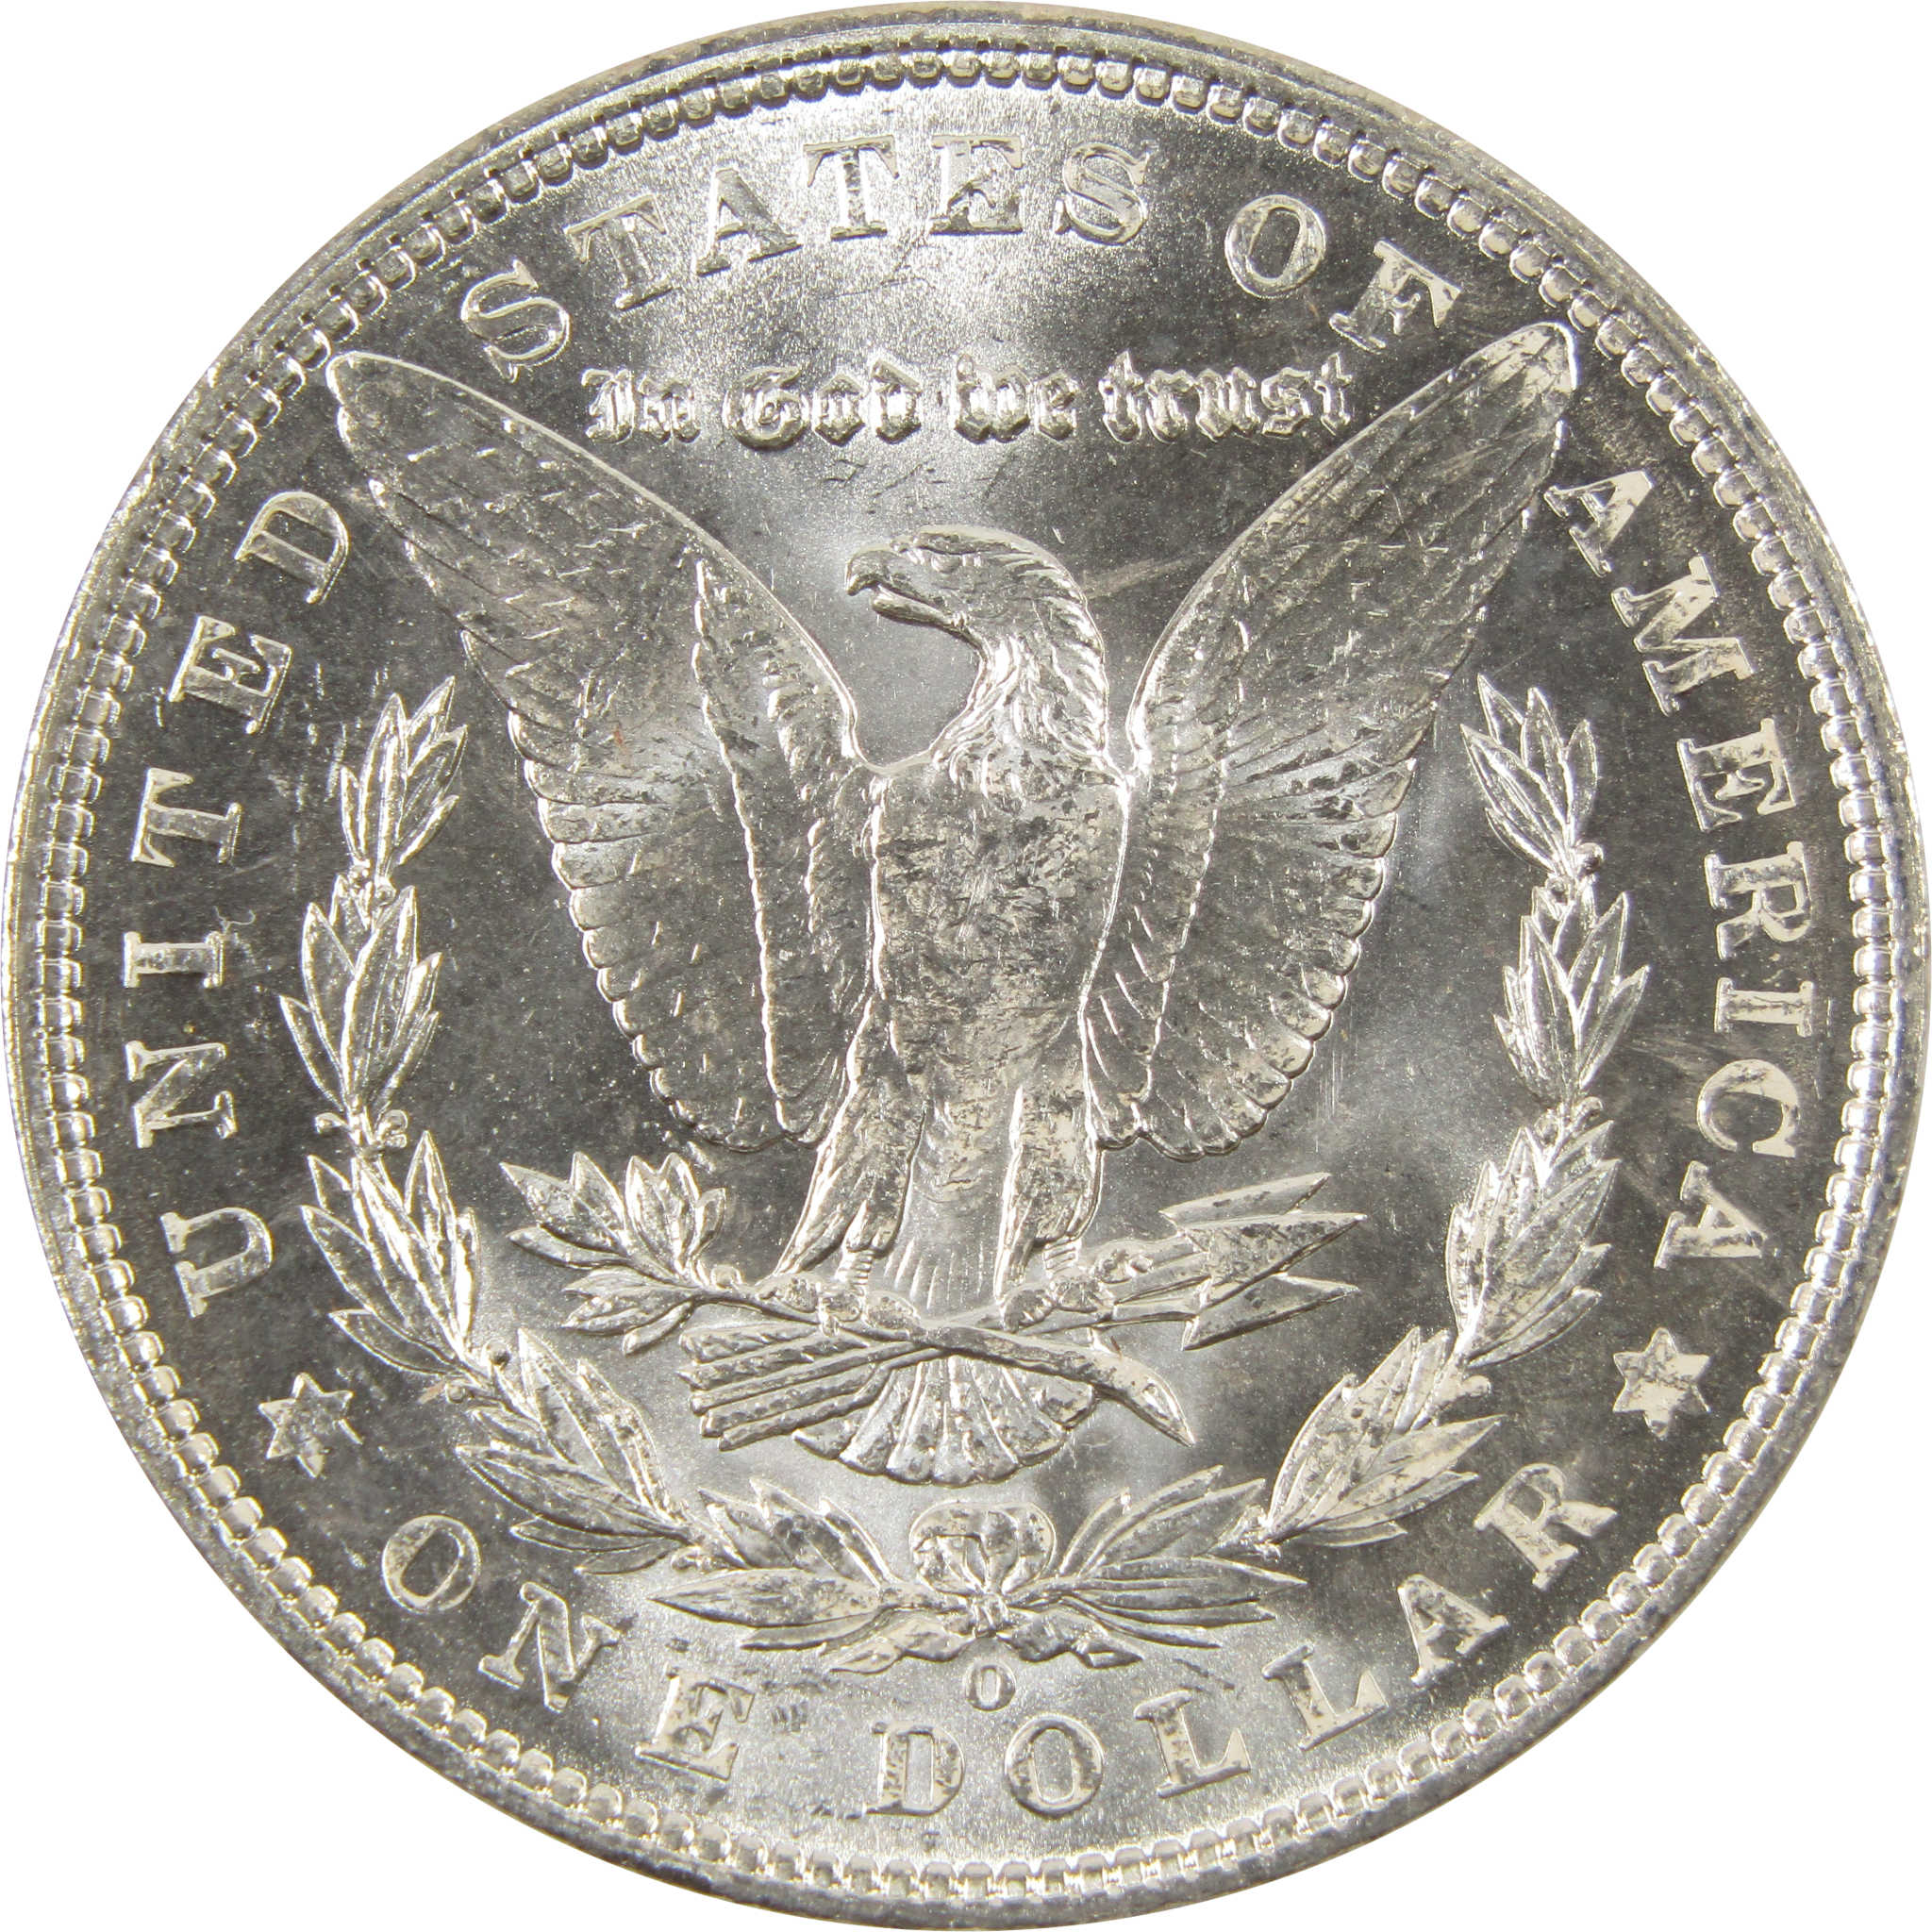 1903 O Morgan Dollar BU Choice Uncirculated 90% Silver $1 SKU:I7515 - Morgan coin - Morgan silver dollar - Morgan silver dollar for sale - Profile Coins &amp; Collectibles